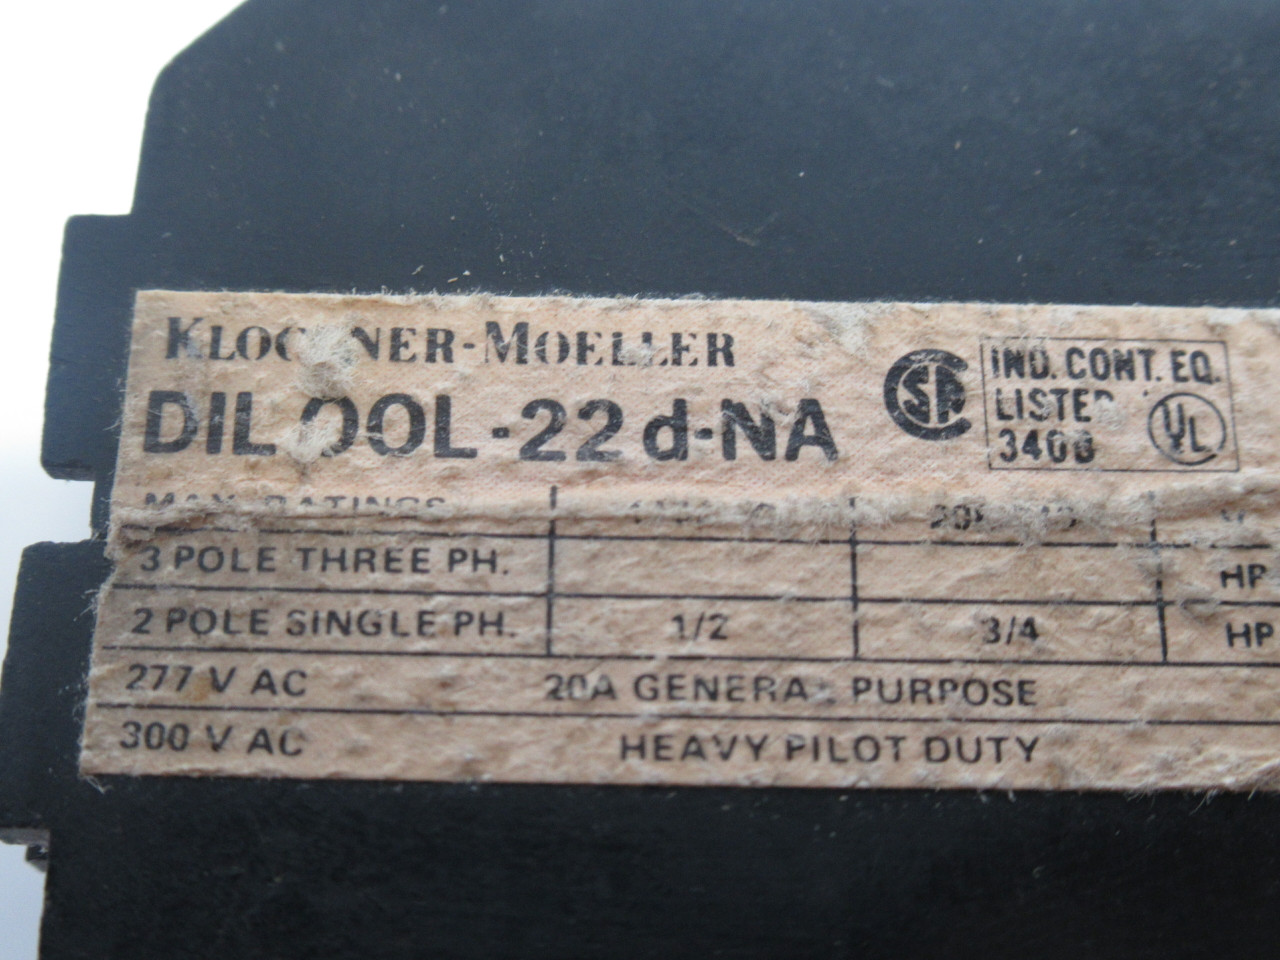 Klockner-Moeller DIL00L-22D-NA Contactor 20A 60Hz Coil 110/115V USED